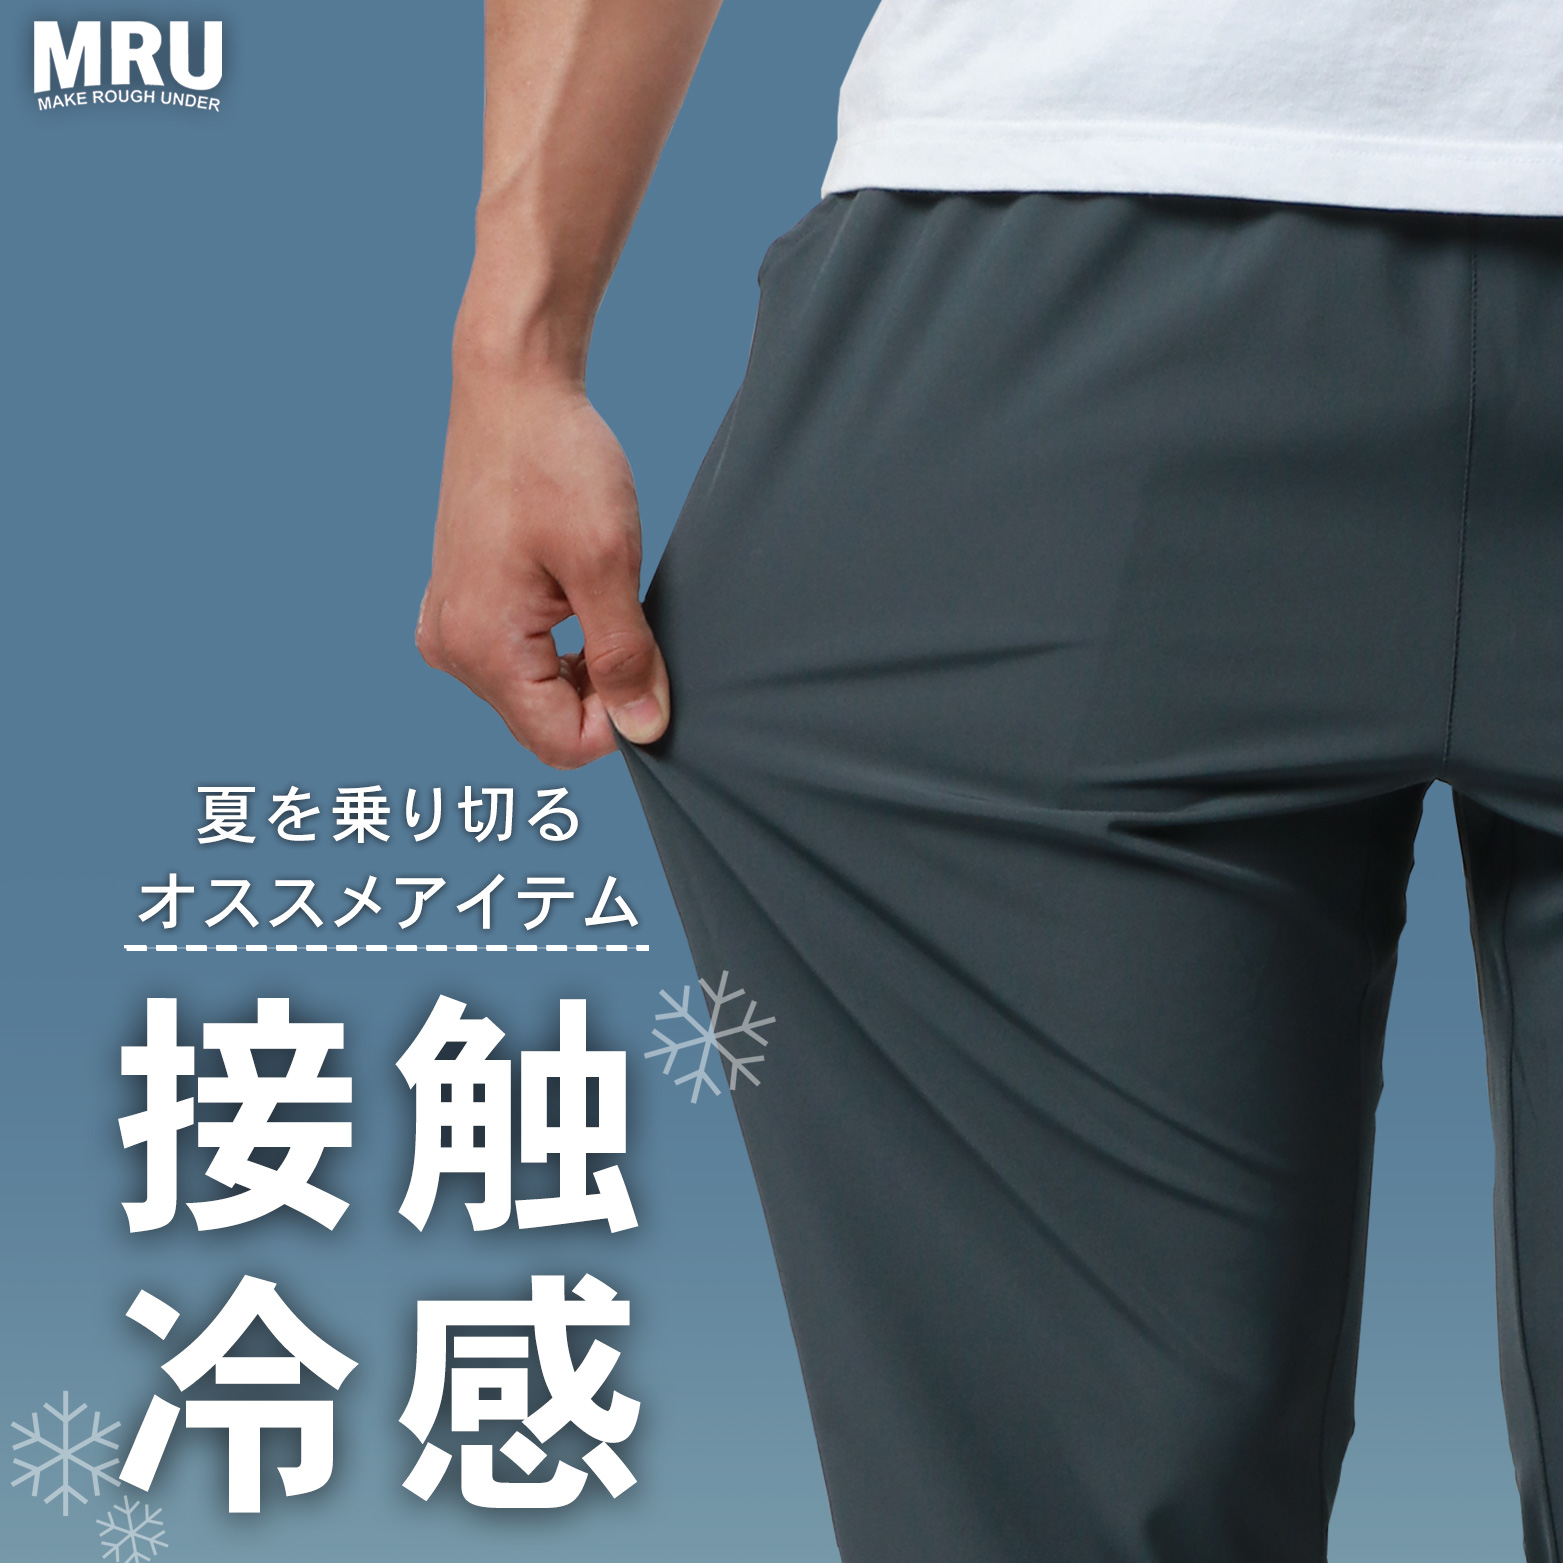 今夏おすすめアイテム『MRU・接触冷感パンツ』